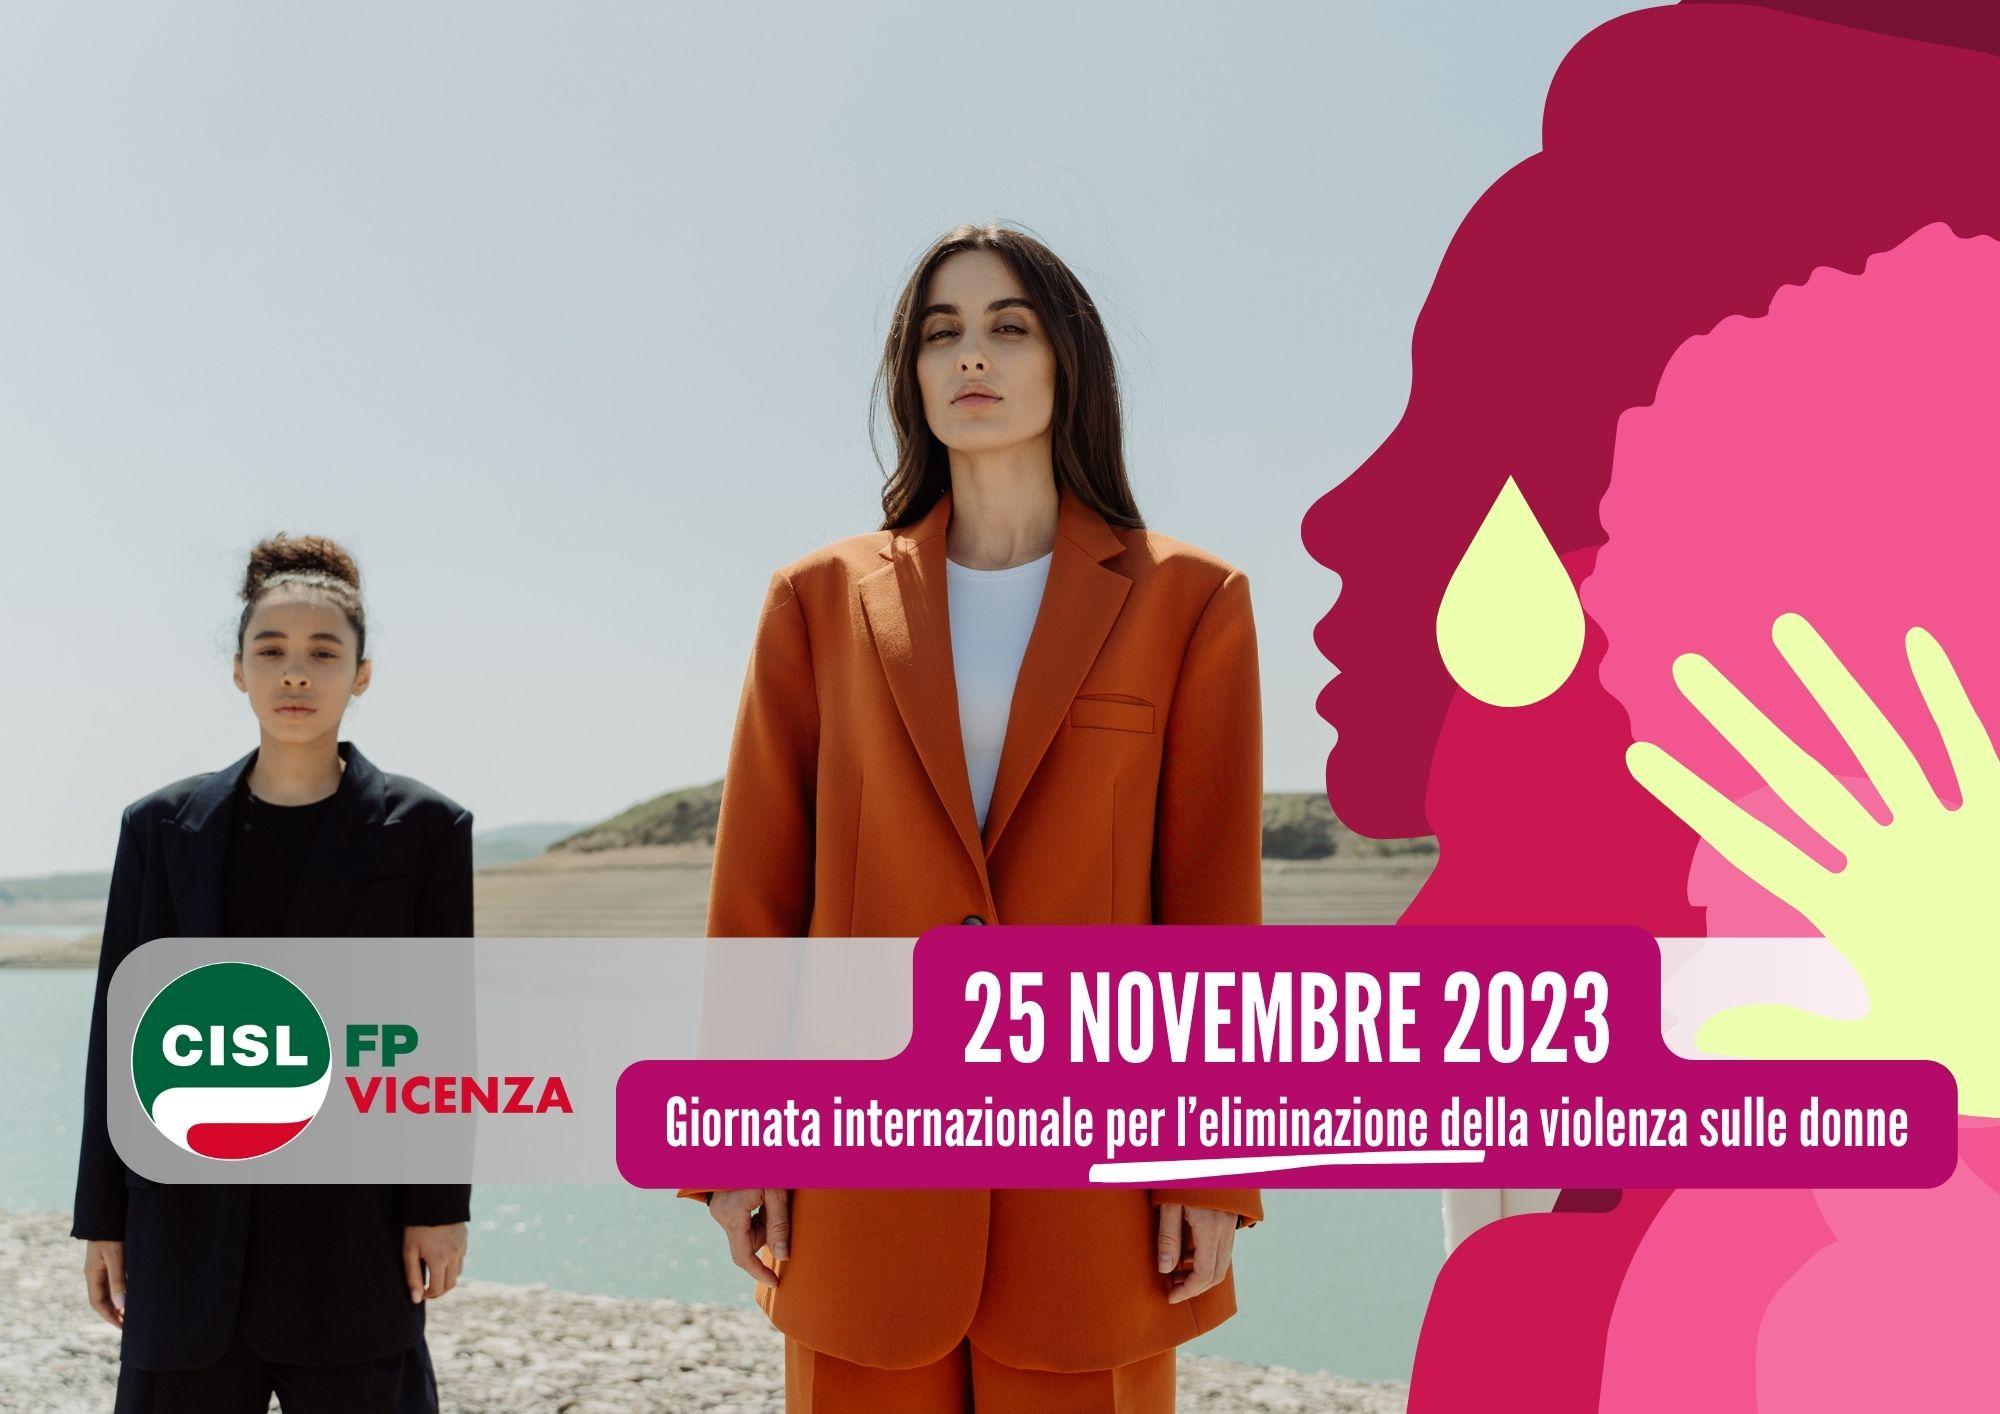 CISL FP Vicenza. 25 novembre. Giornata internazionale per l’eliminazione della violenza sulle donne